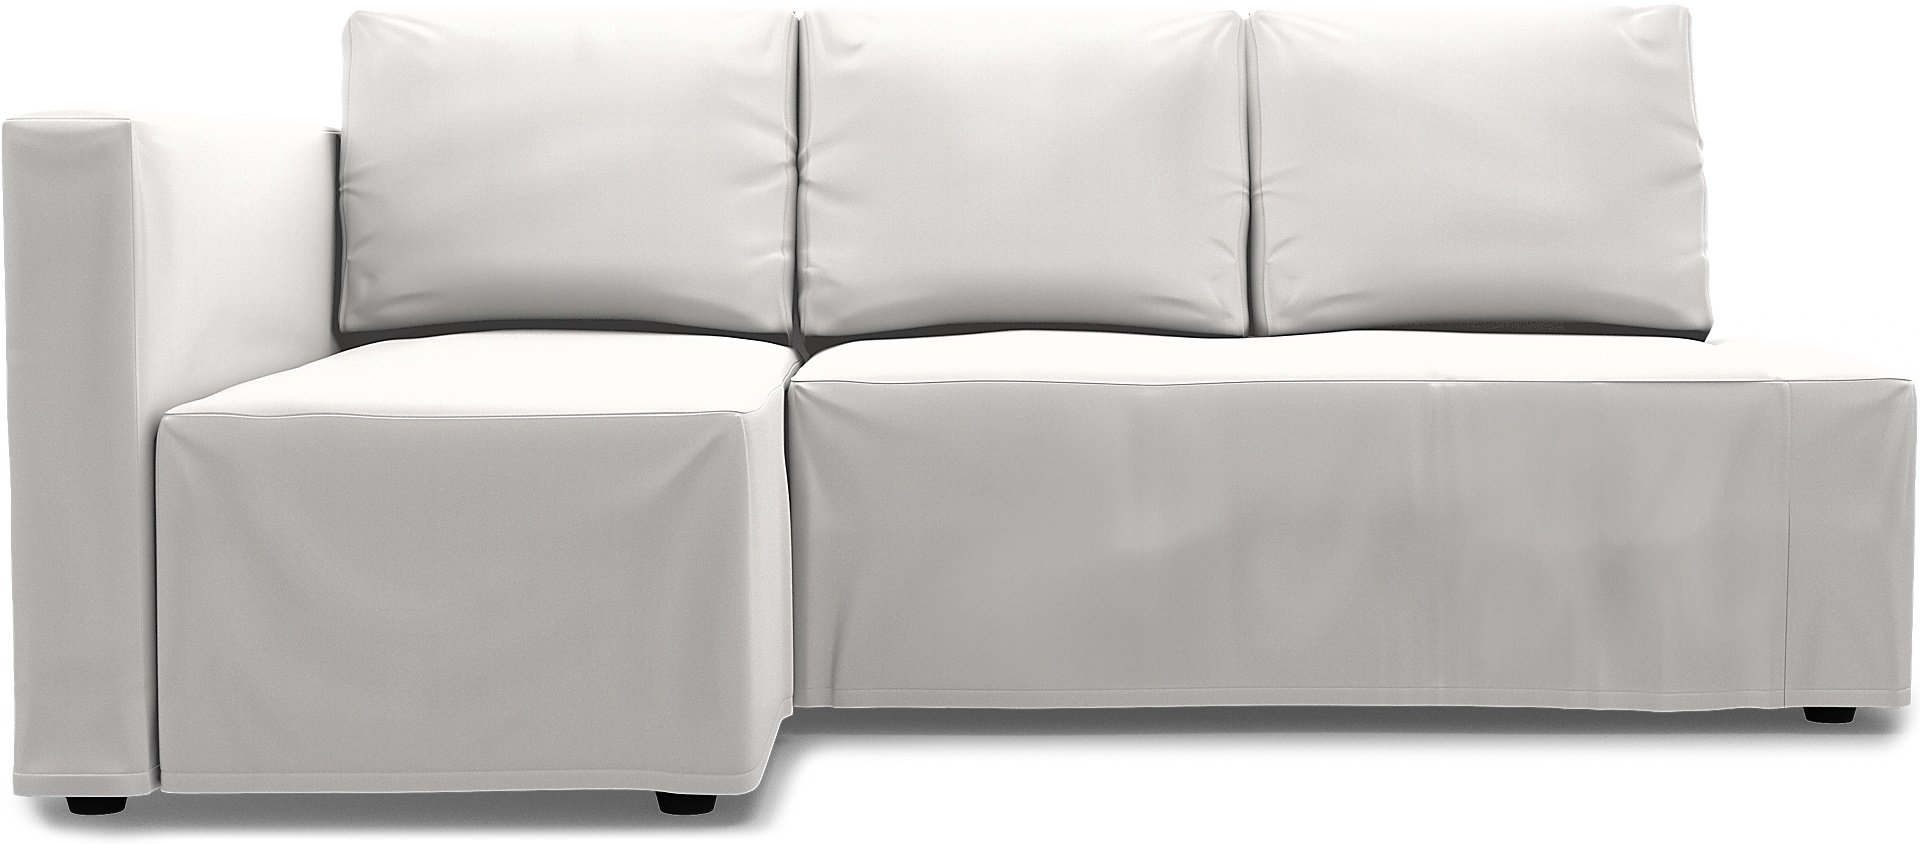 IKEA - Friheten Sofa Bed with Left Chaise Cover, Soft White, Linen - Bemz